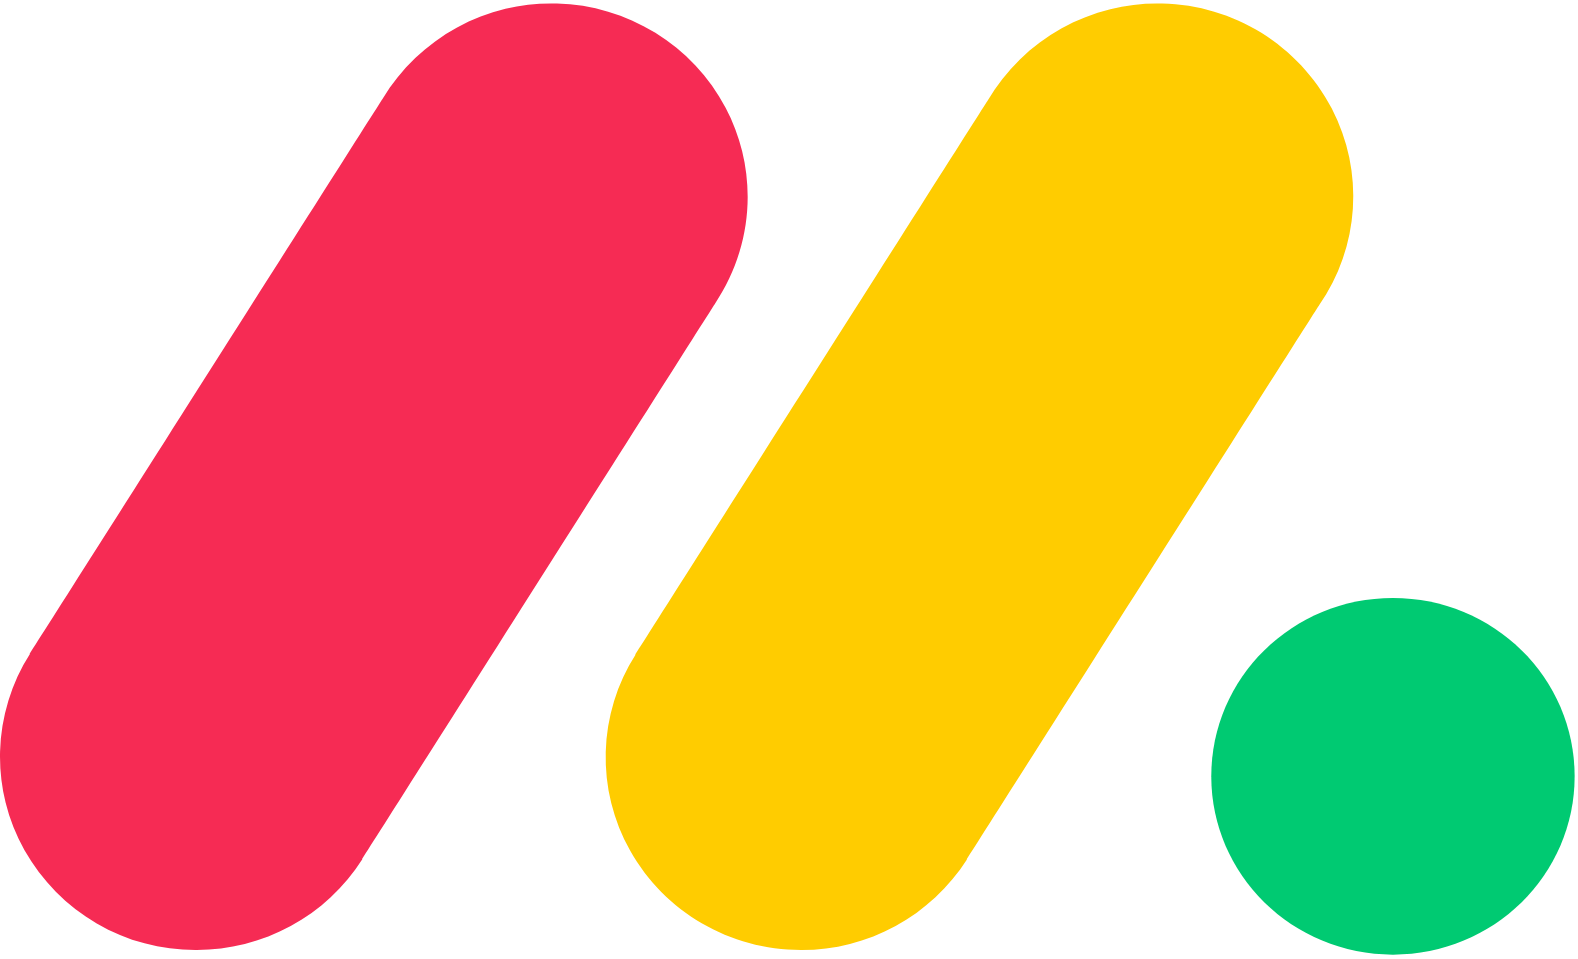 monday.com logo (transparent PNG)